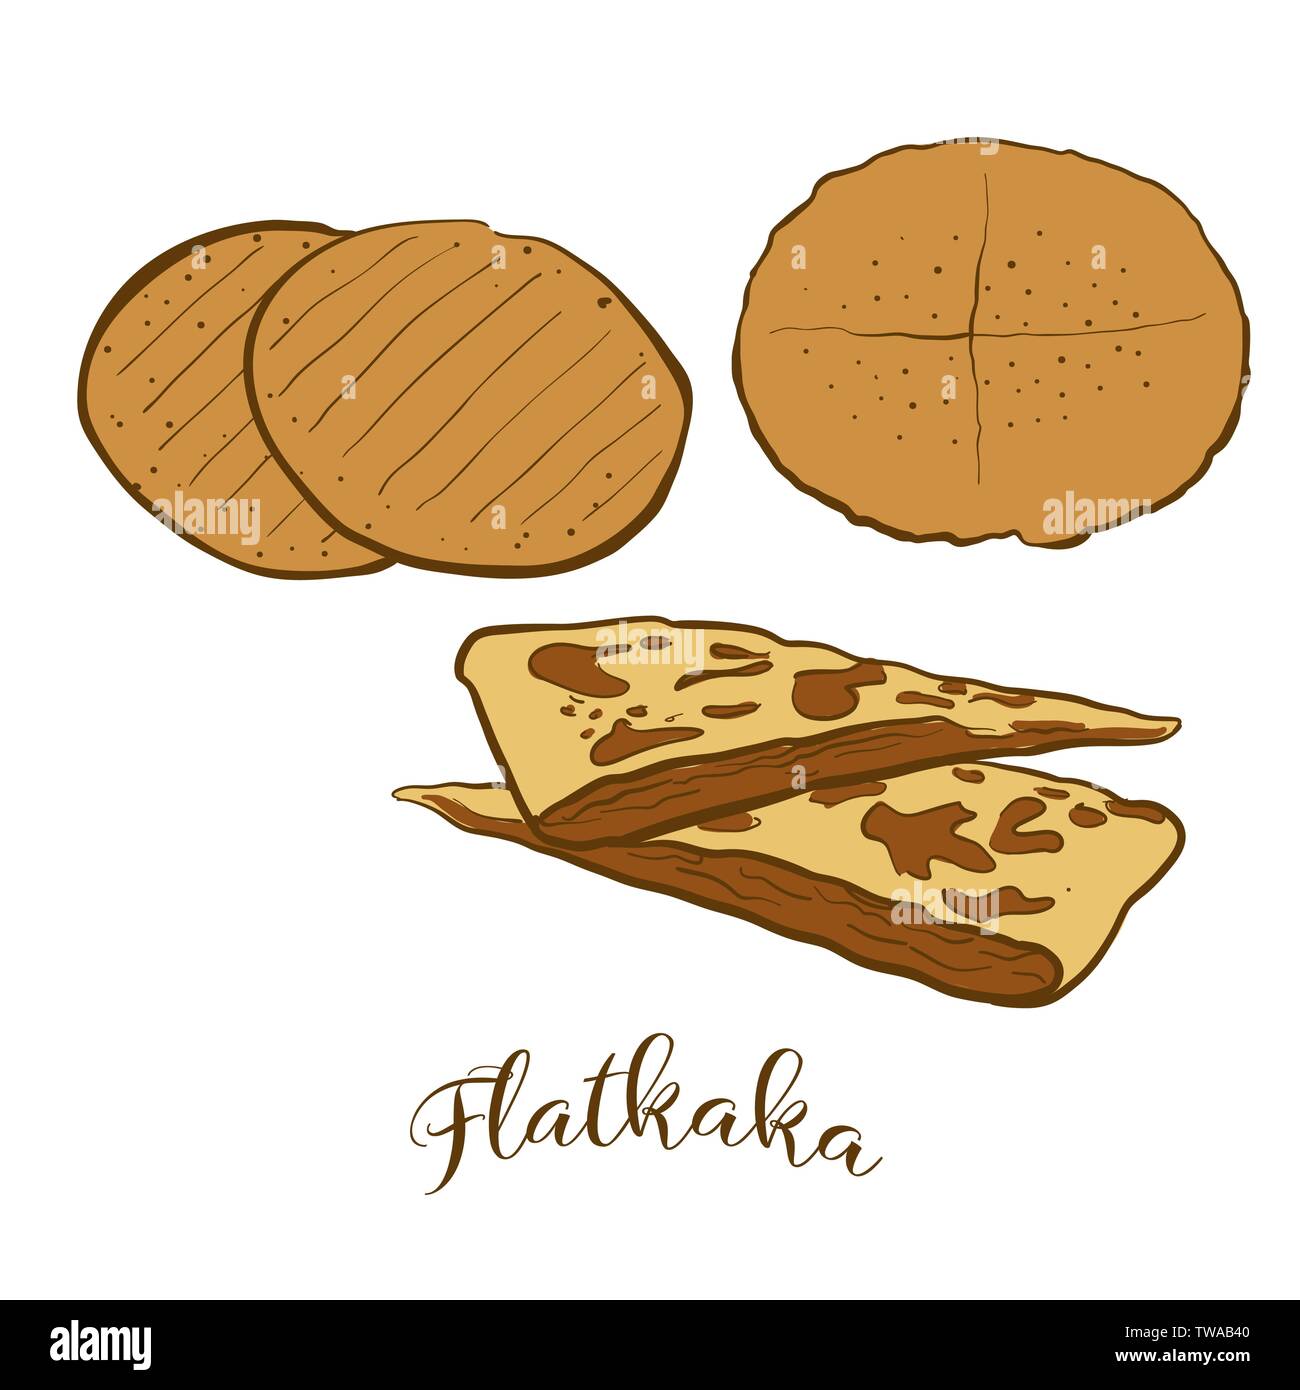 Farbige Skizzen von Flatkaka Brot. Vektor Zeichnung von Fladenbrot Essen, in der Regel in Island. Farbige Brot Abbildung Serie. Stock Vektor